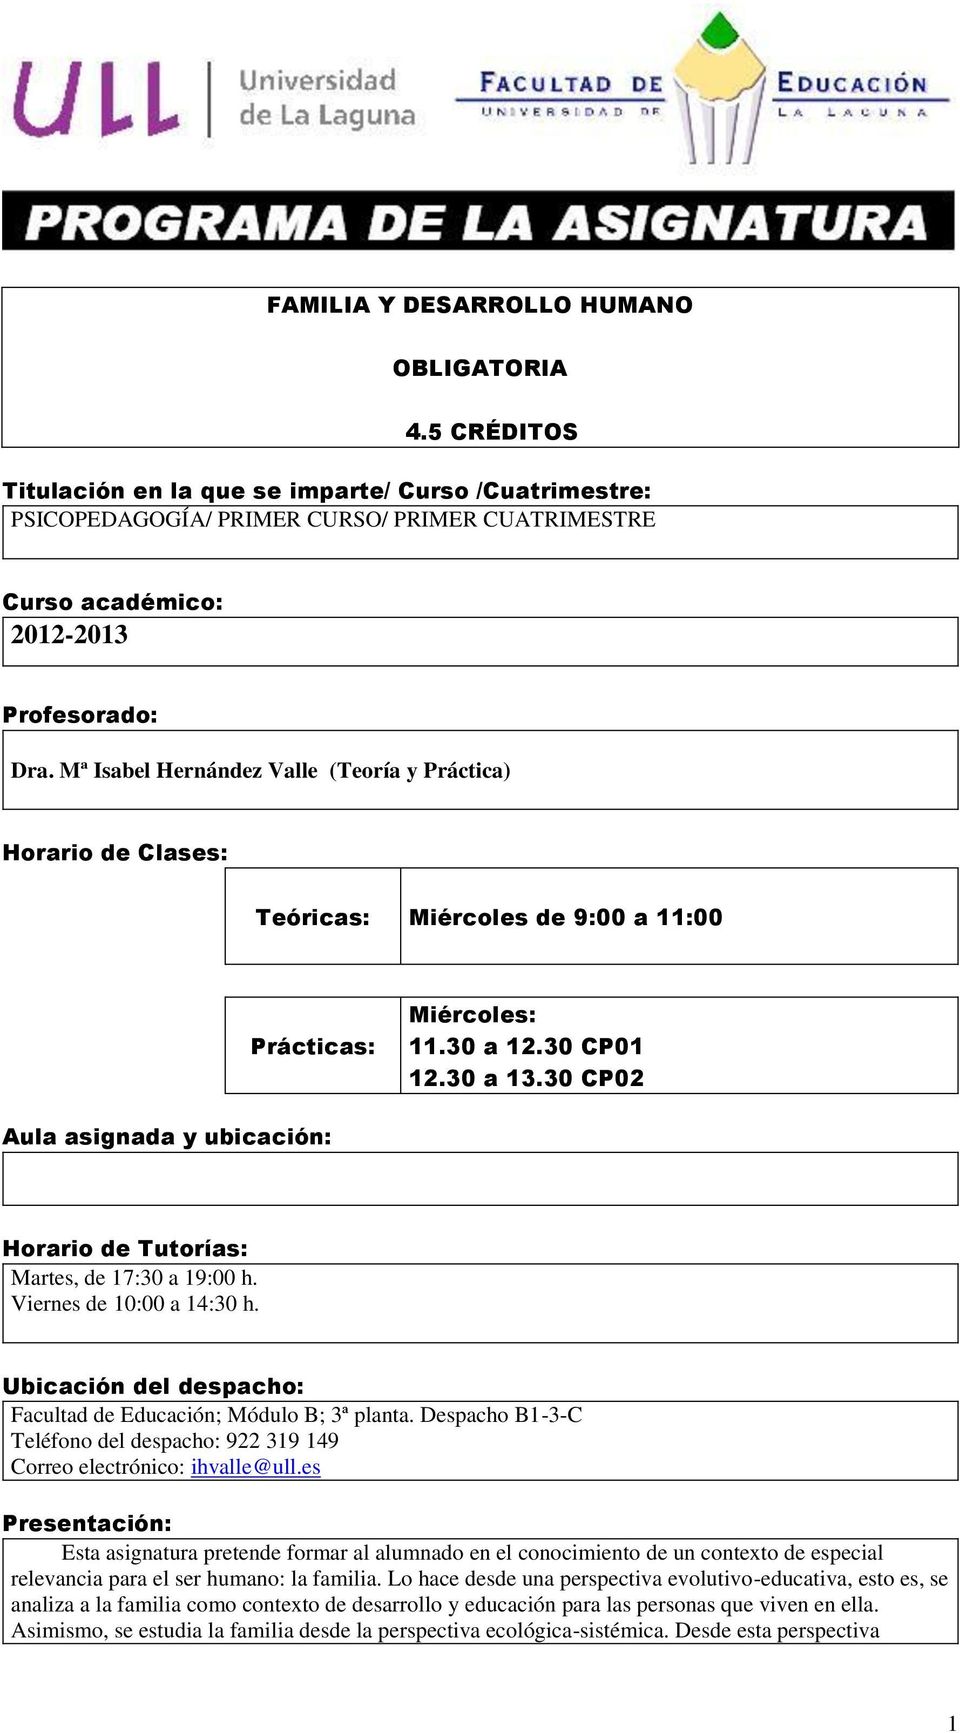 Mª Isabel Hernández Valle (Teoría y Práctica) Horario de Clases: Teóricas: Miércoles de 9:00 a 11:00 Prácticas: Miércoles: 11.30 a 12.30 CP01 12.30 a 13.